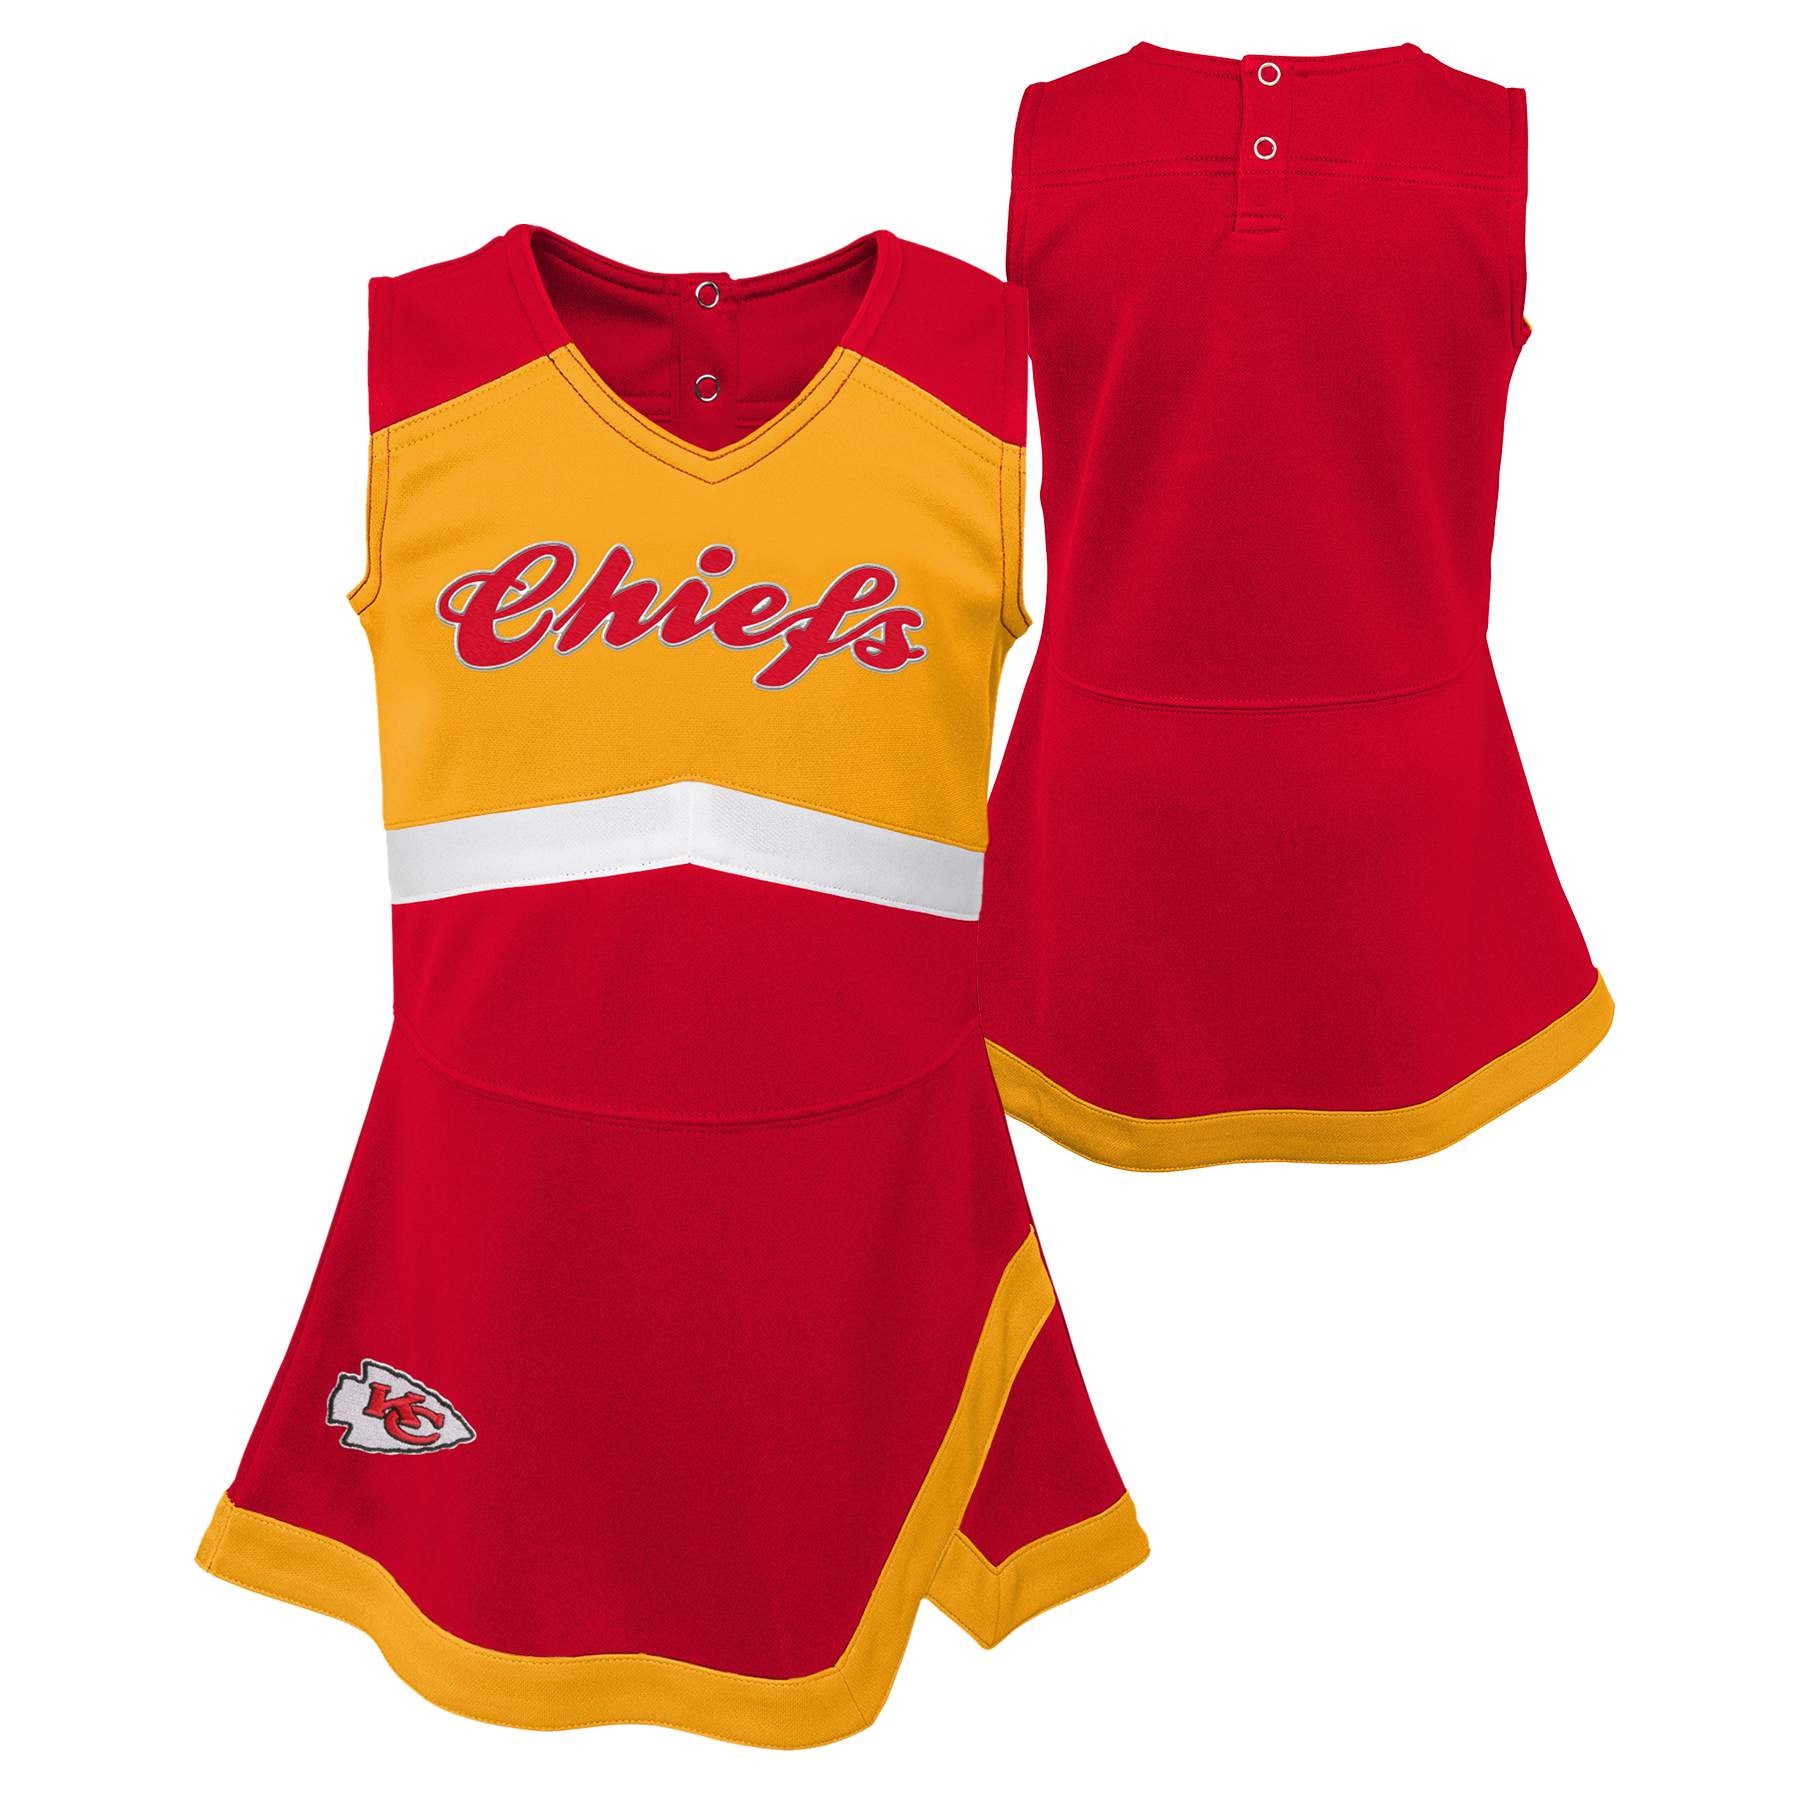 chiefs jersey dress